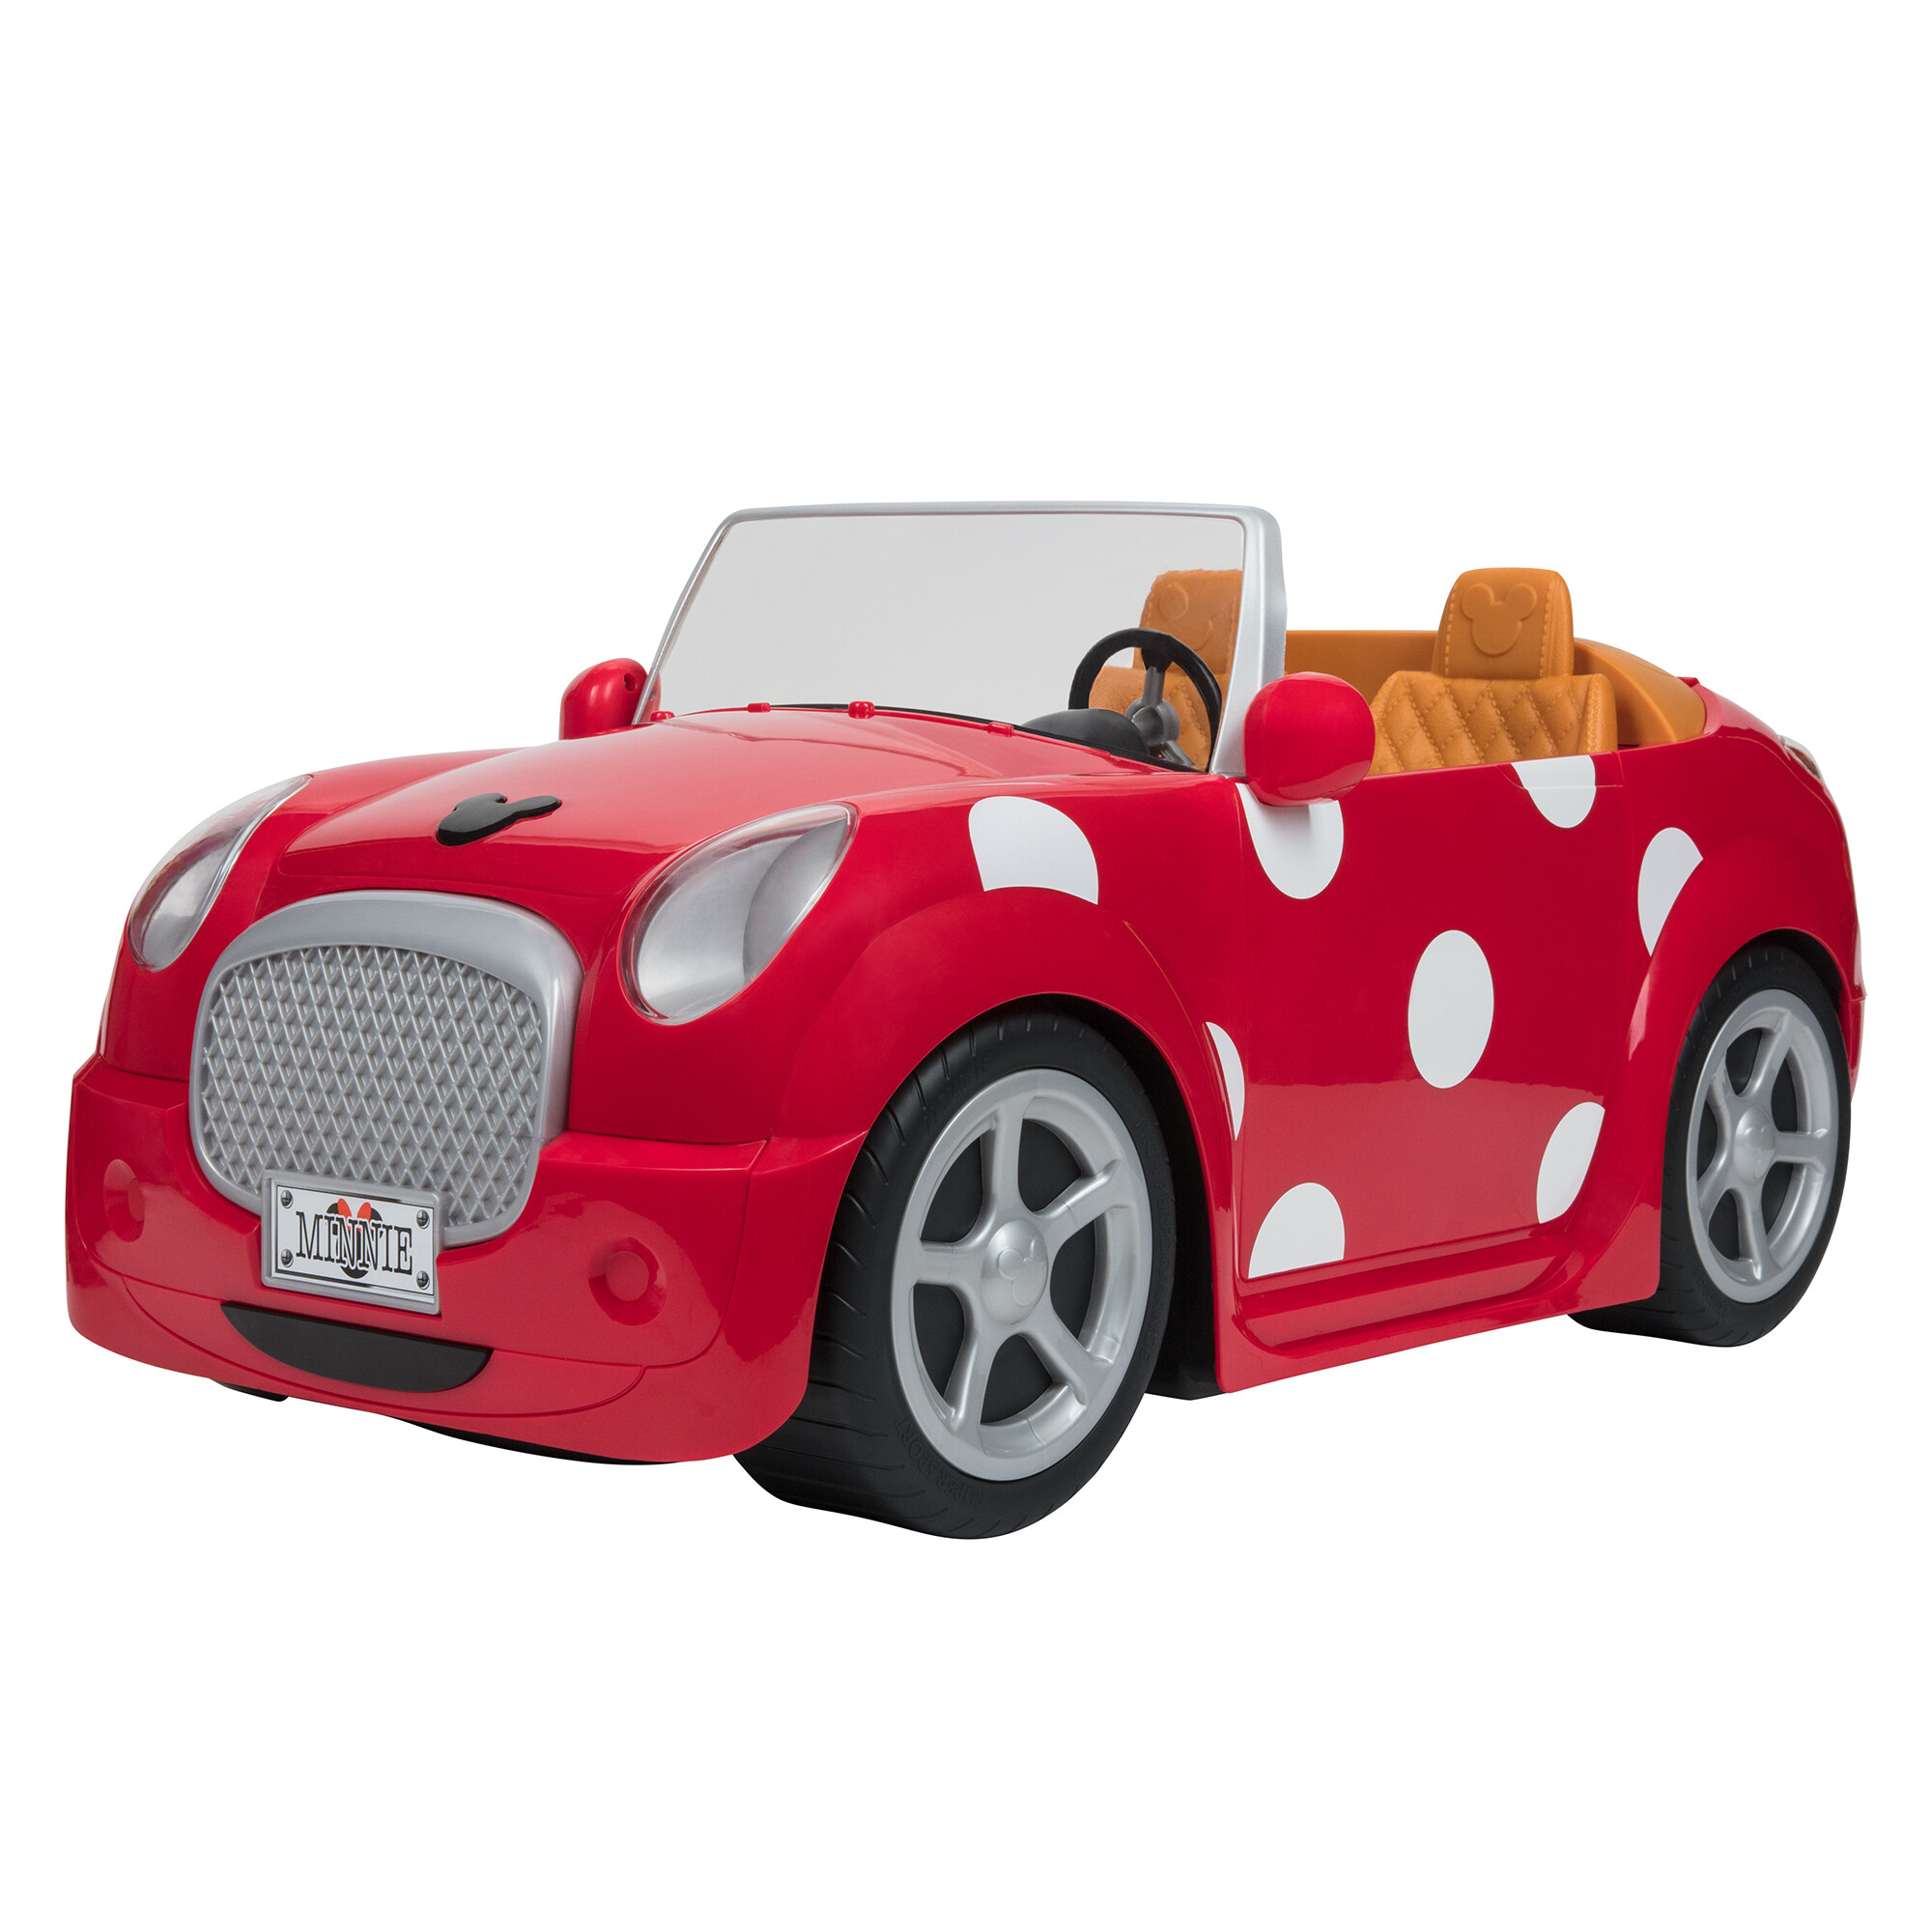 Disney ily 4ever deluxe coupe ispirata a minnie con volante e ruote funzionanti - Minnie